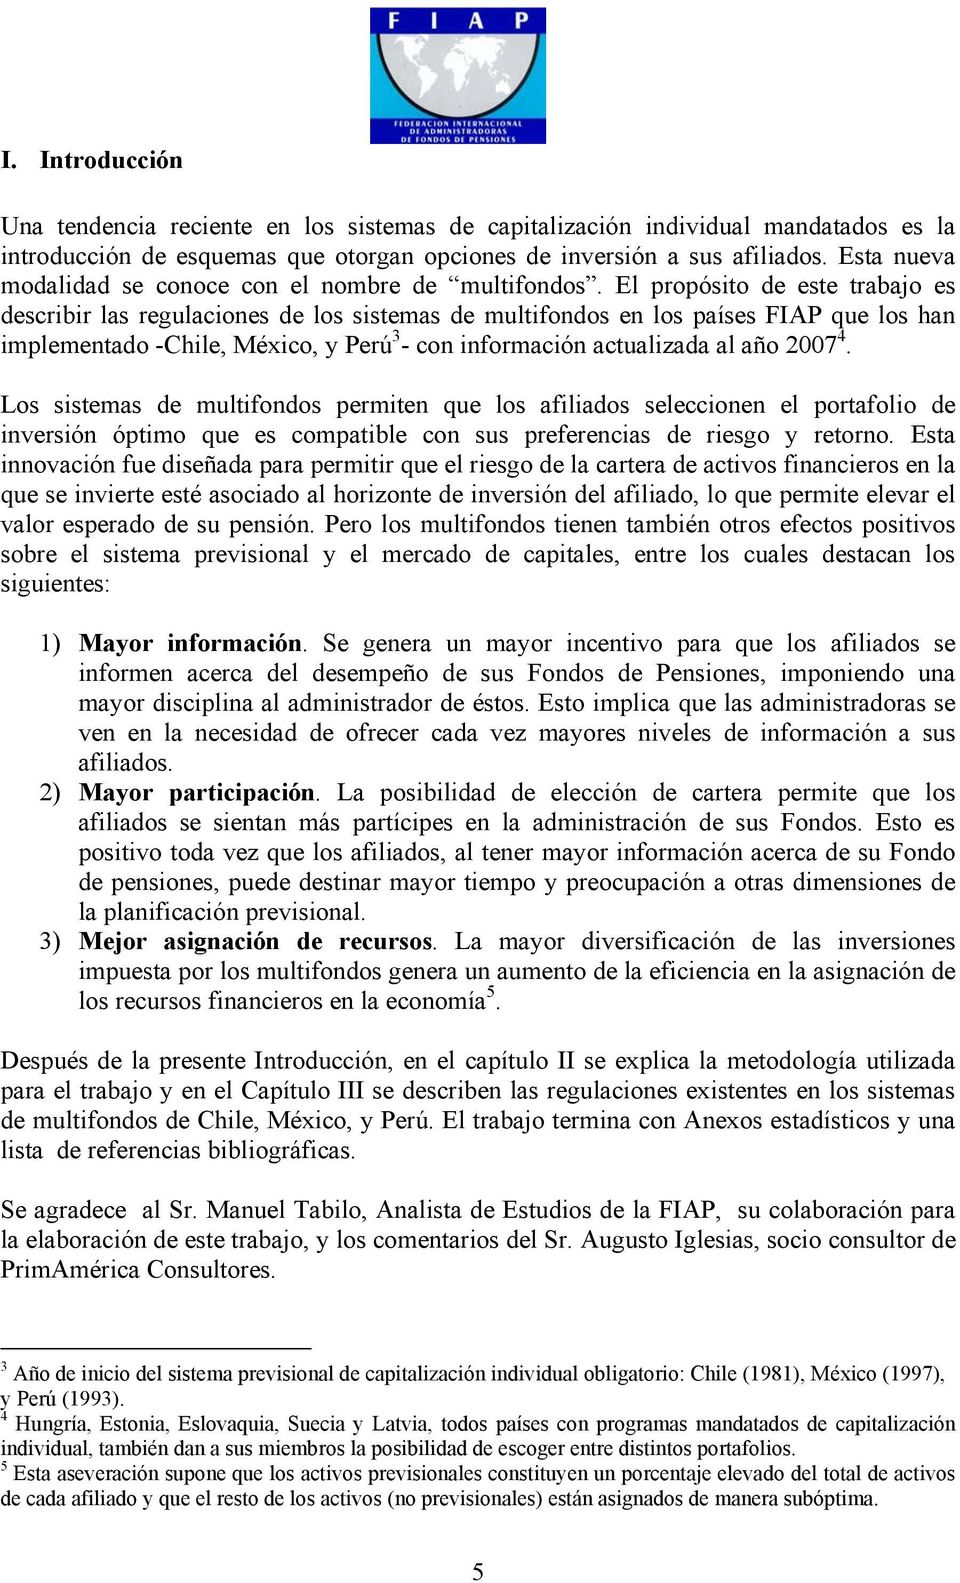 El propósito de este trabajo es describir las regulaciones de los sistemas de multifondos en los países FIAP que los han implementado -Chile, México, y Perú 3 - con información actualizada al año